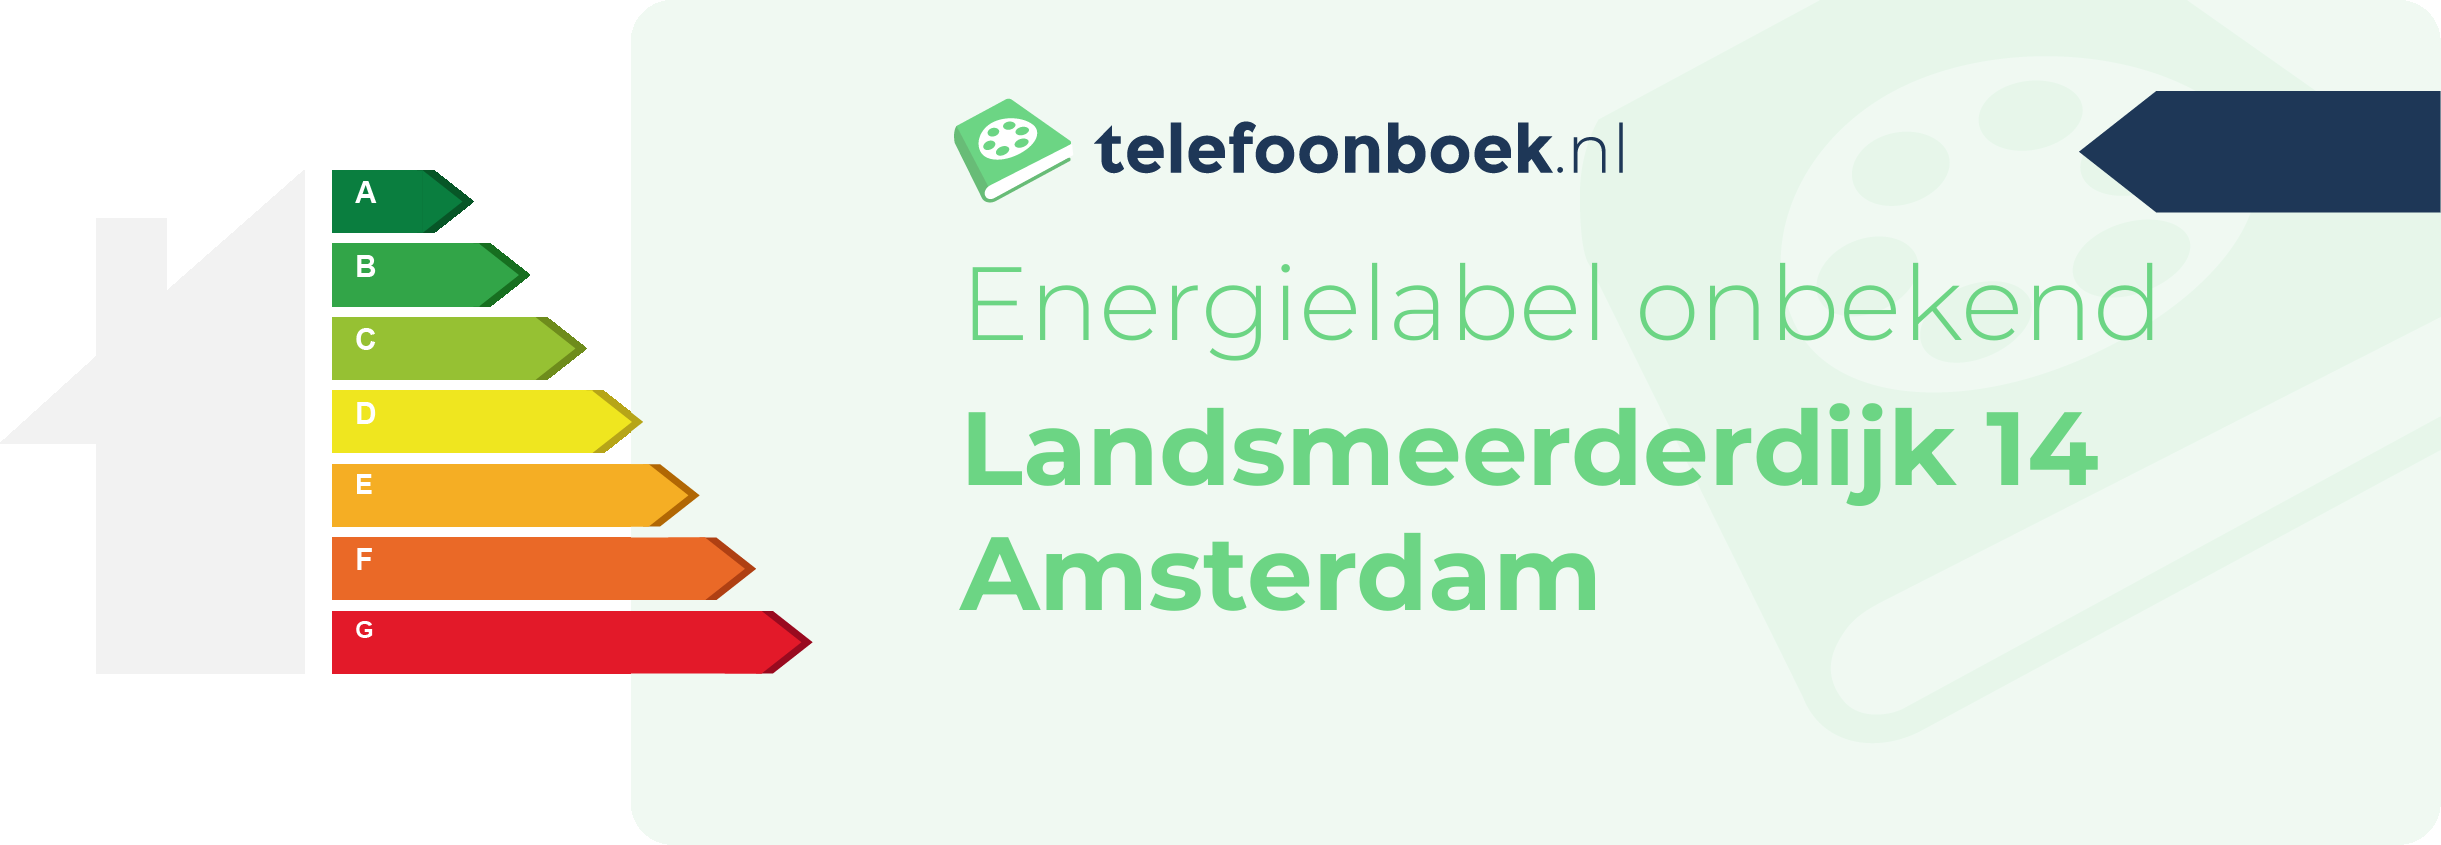 Energielabel Landsmeerderdijk 14 Amsterdam